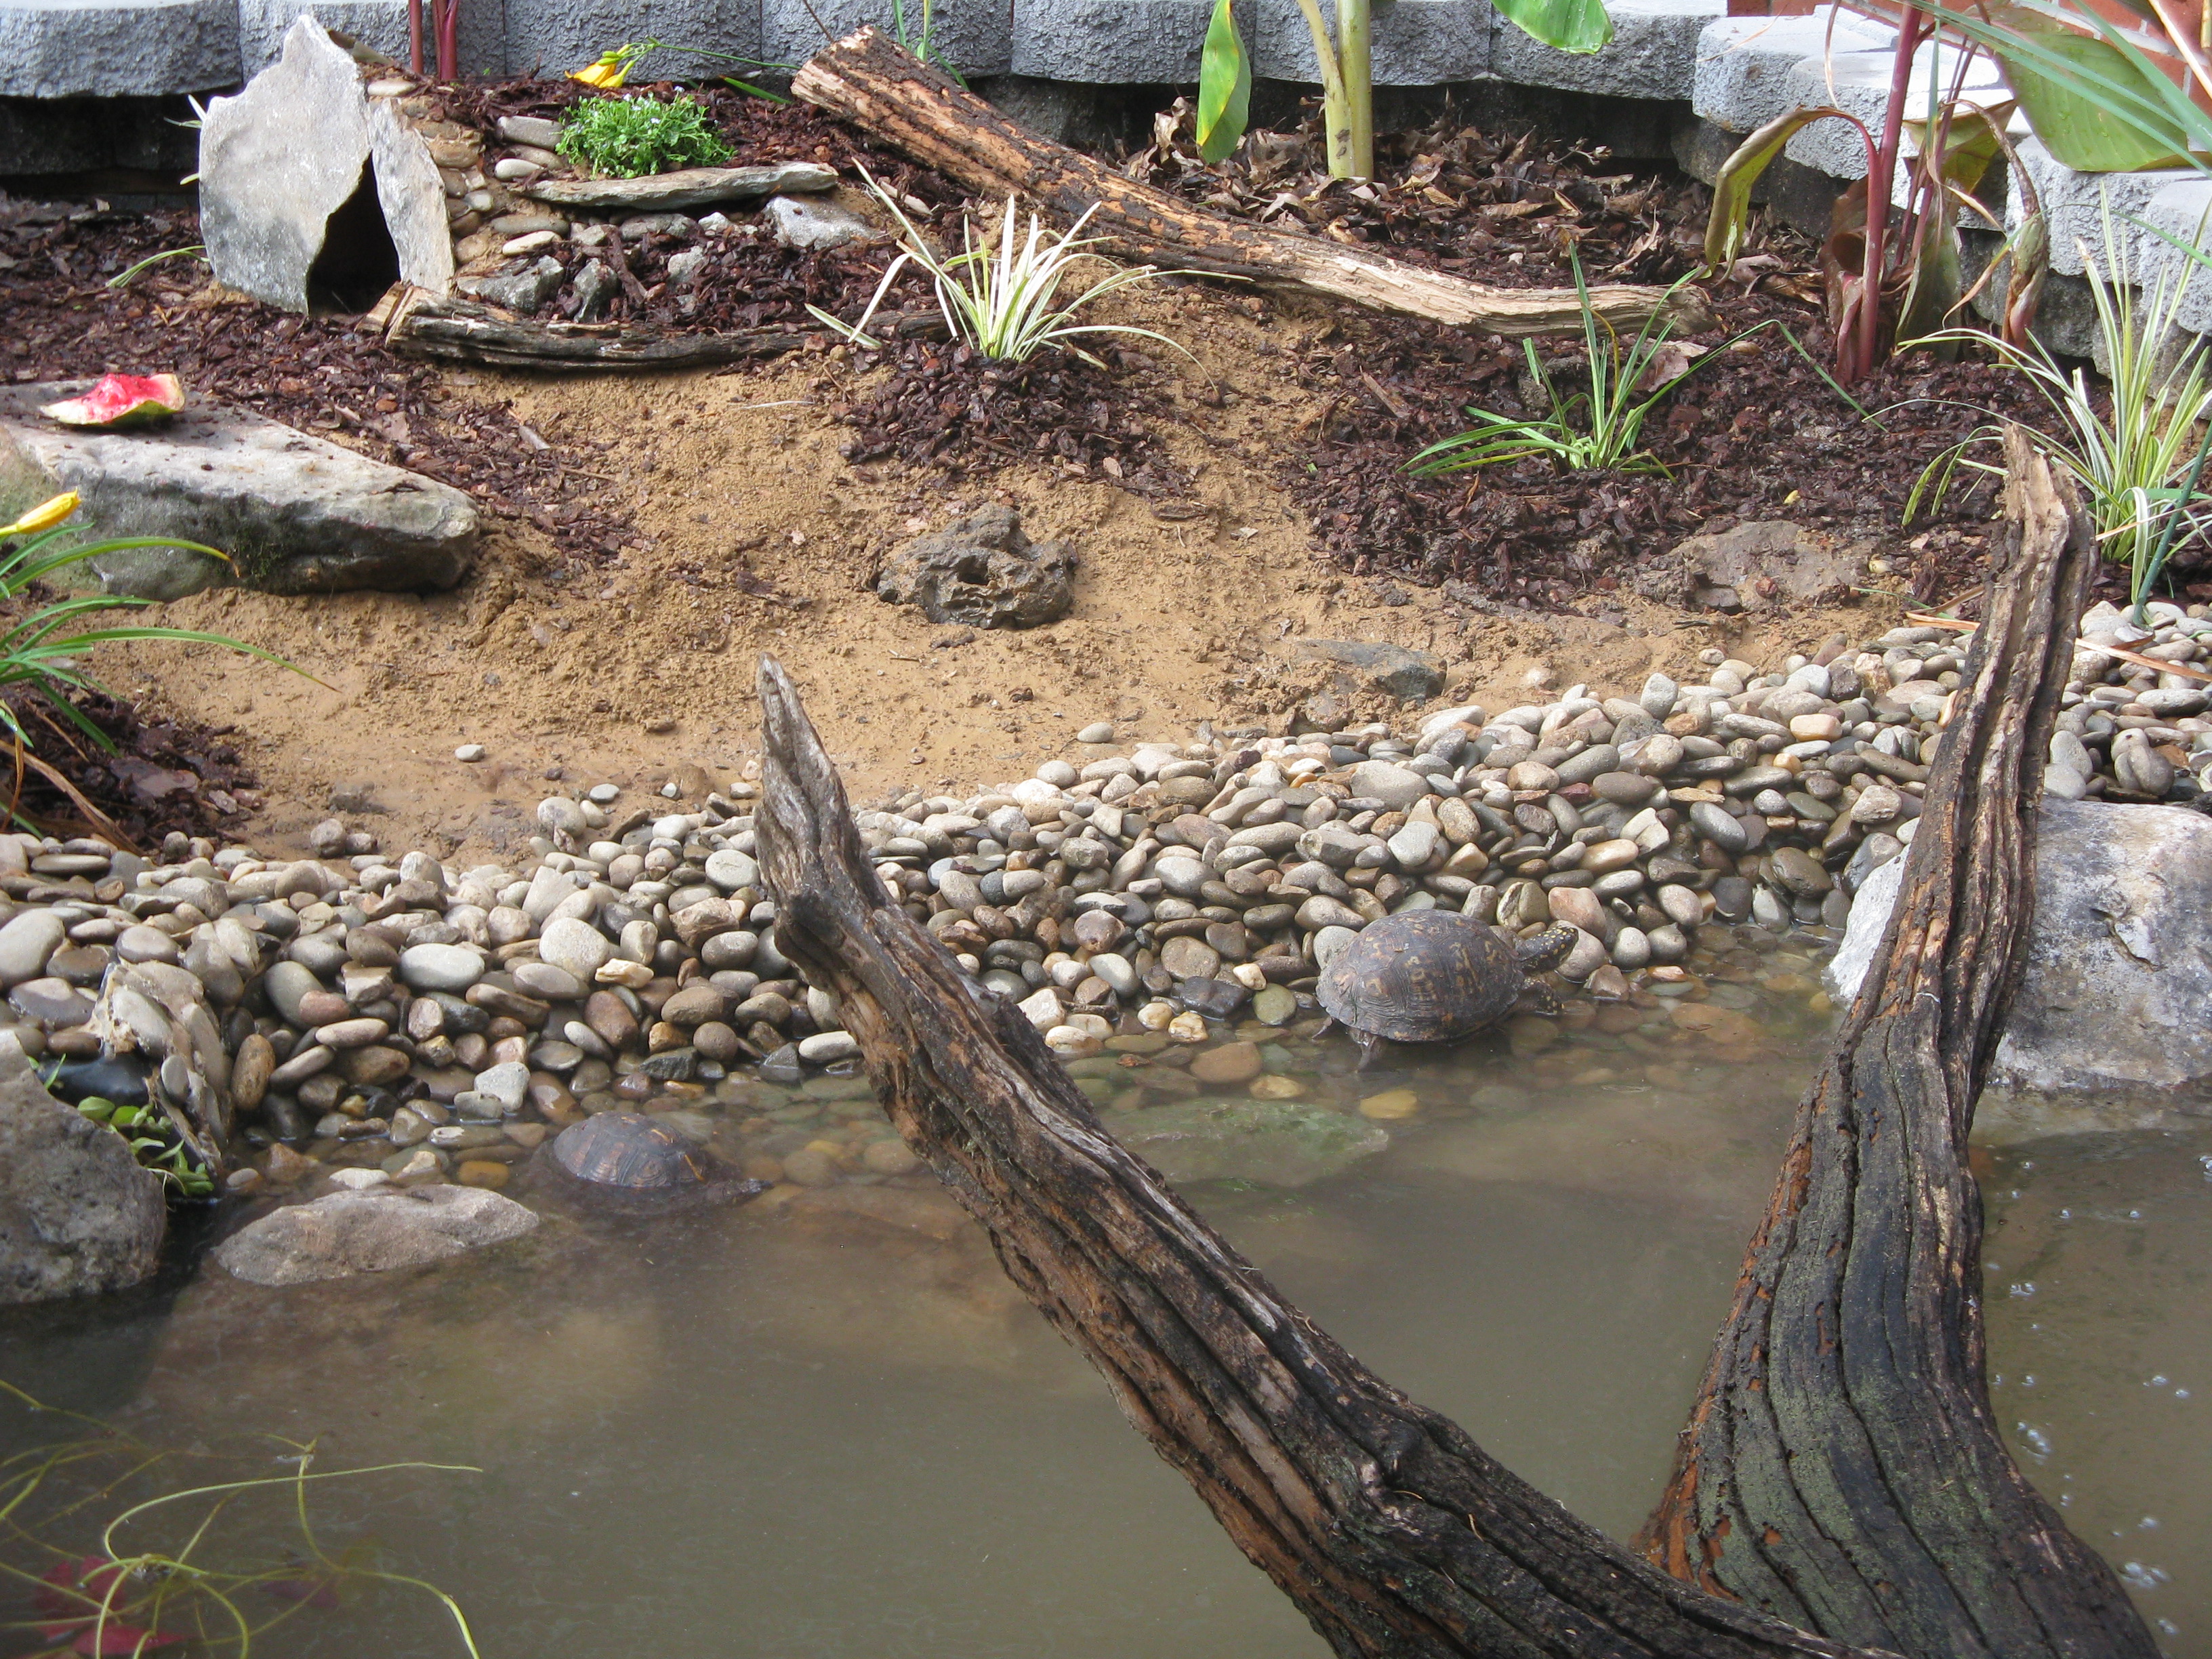 Outdoor Learning Station Box Turtle Habitat Awf,Washing Soda Formula